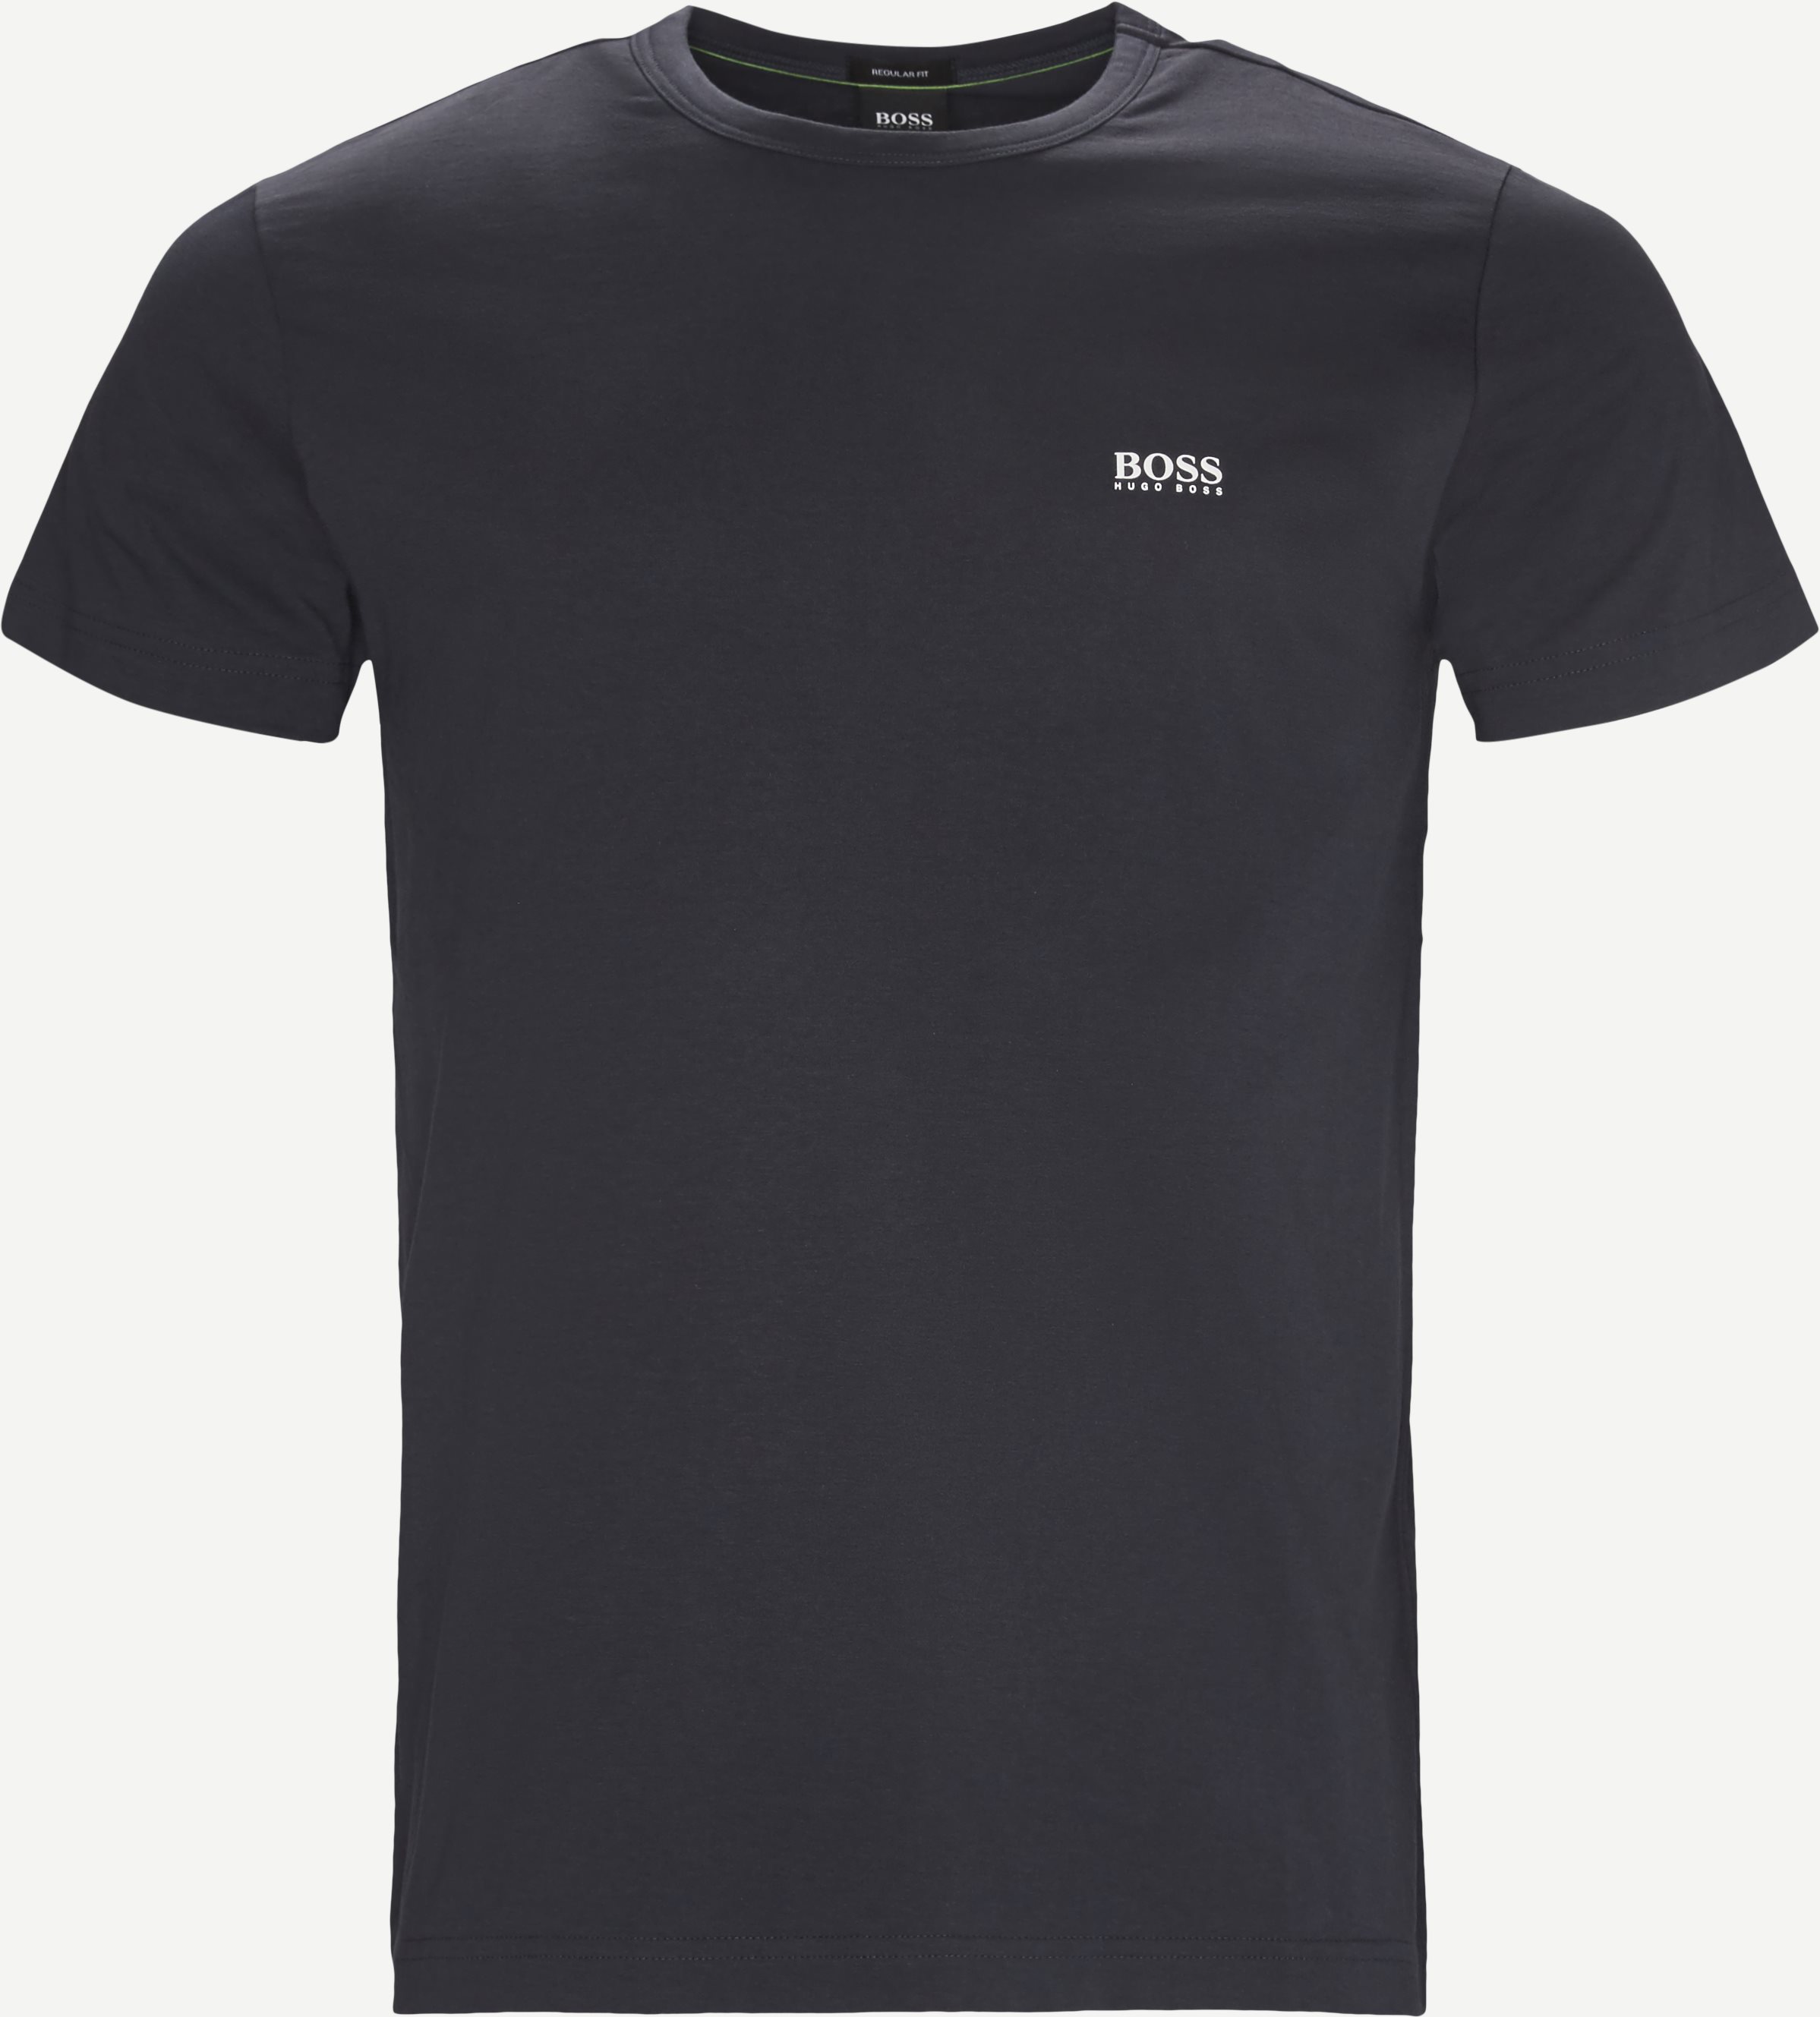 Tee T-shirt - T-shirts - Regular fit - Blue